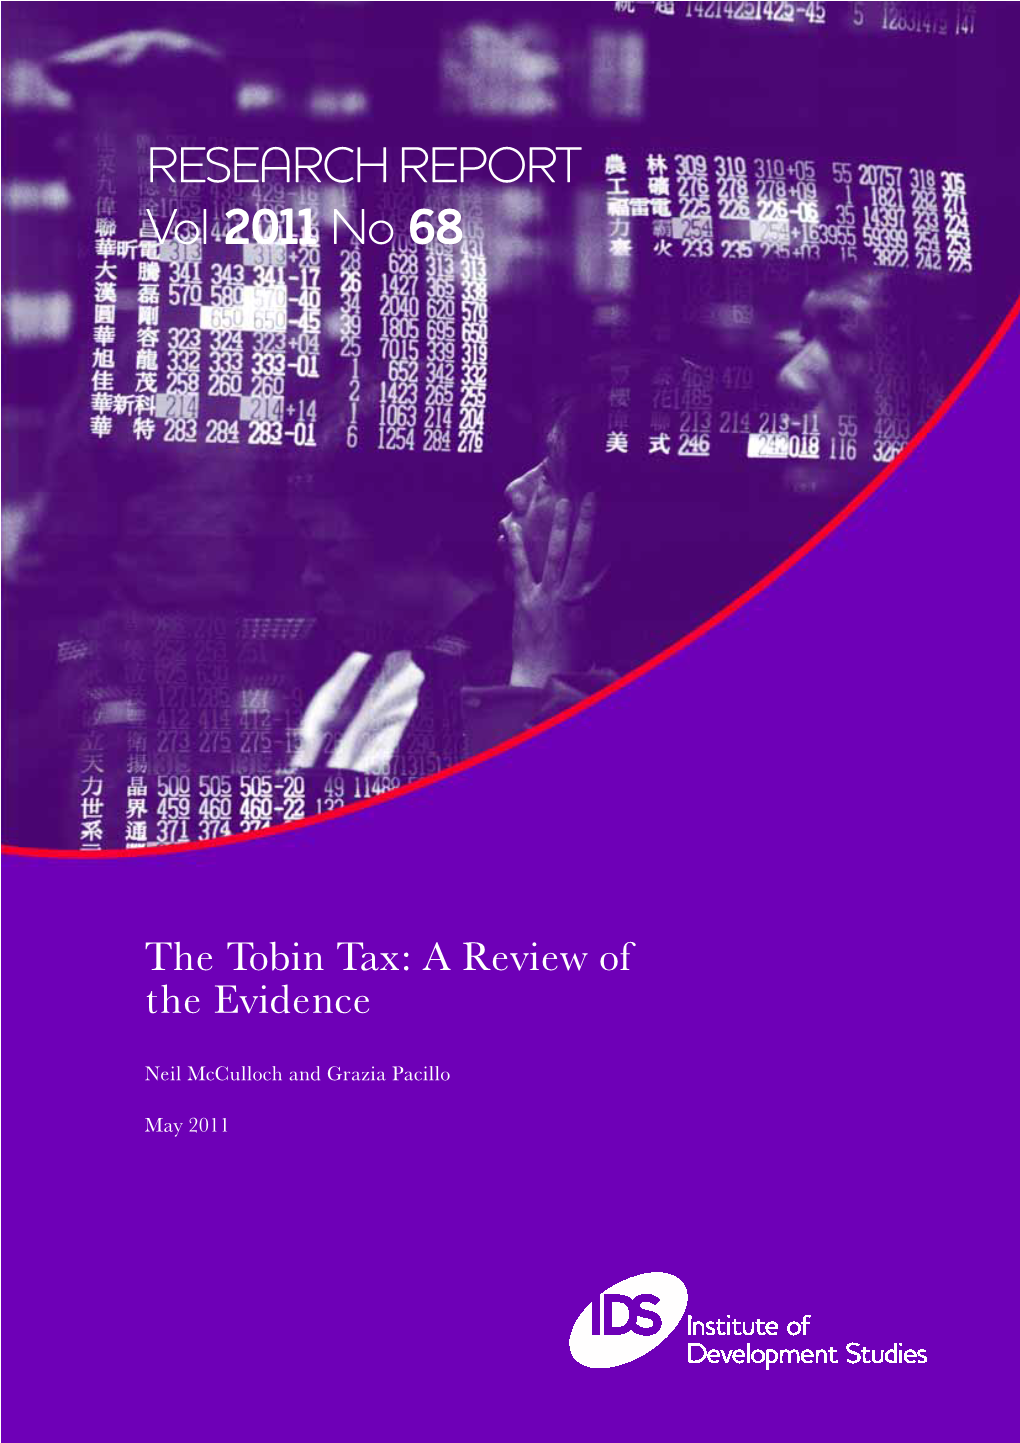 RESEARCH REPORT Vol 2011 No 68